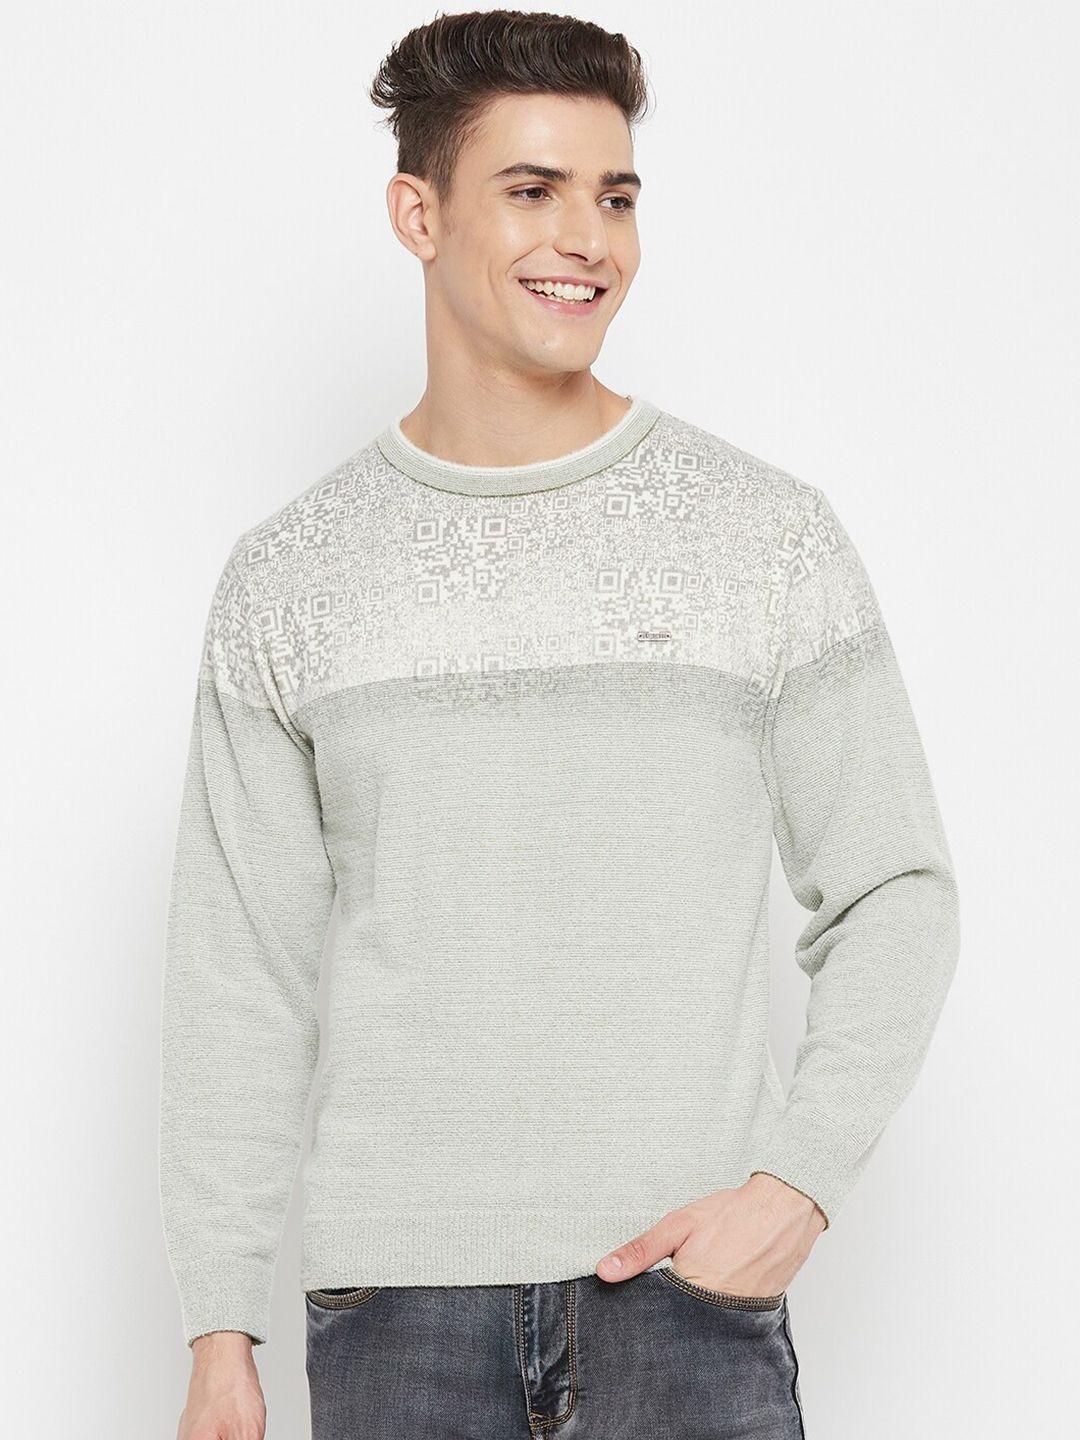 duke men off white & grey printed pullover